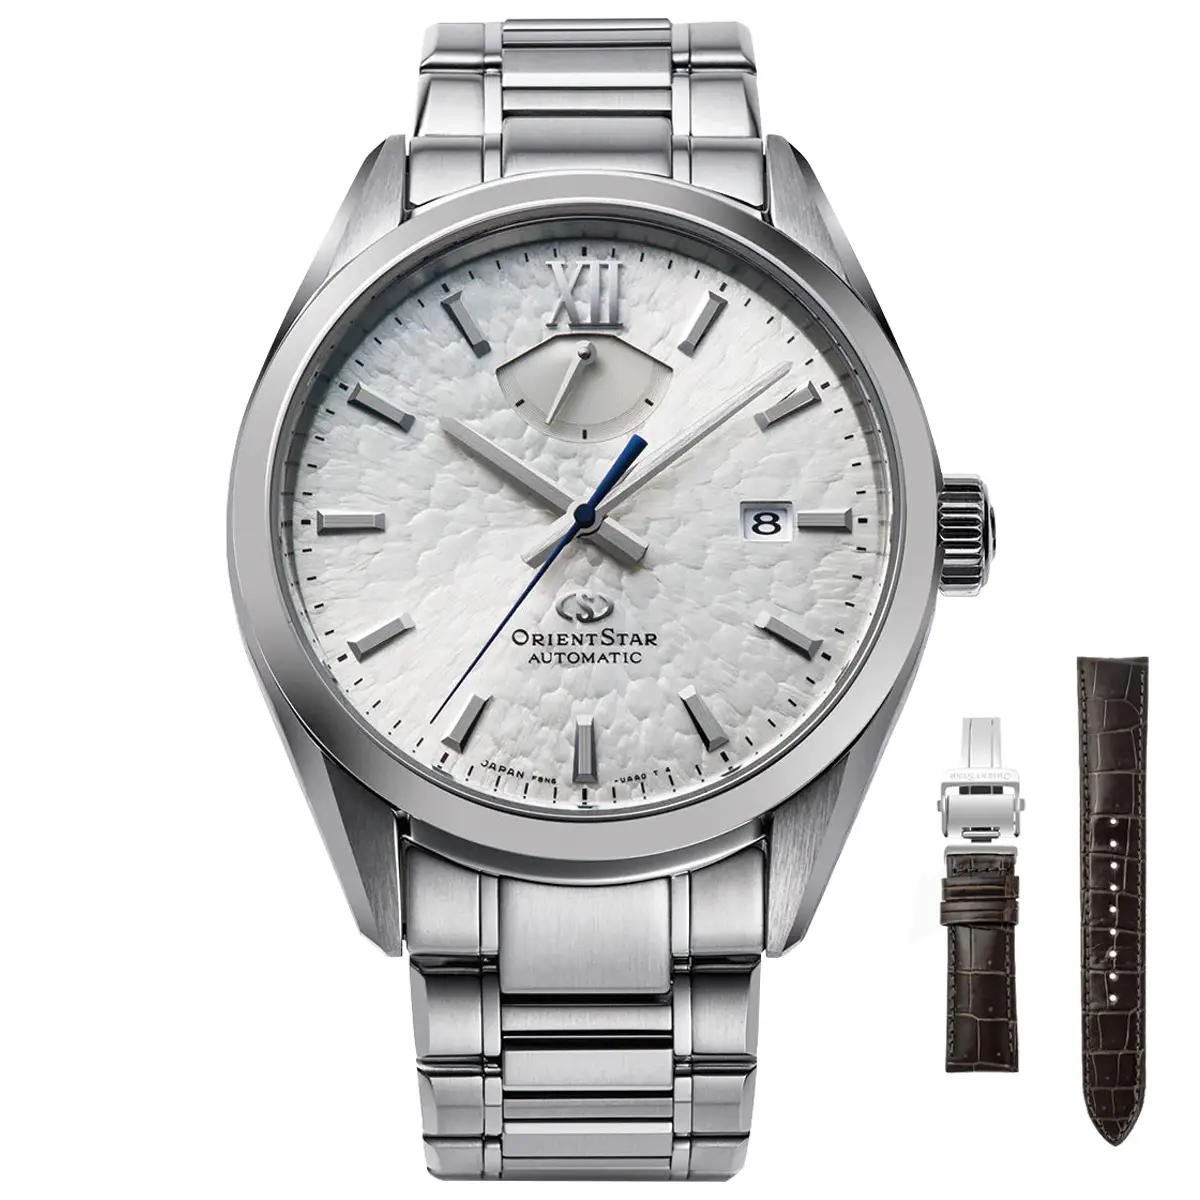 Đồng hồ Orient Star M34 F8 Date Limited Edition RK-BX0001S mặt số màu bạc. Dây đeo bằng thép và da. Thân vỏ bằng thép.